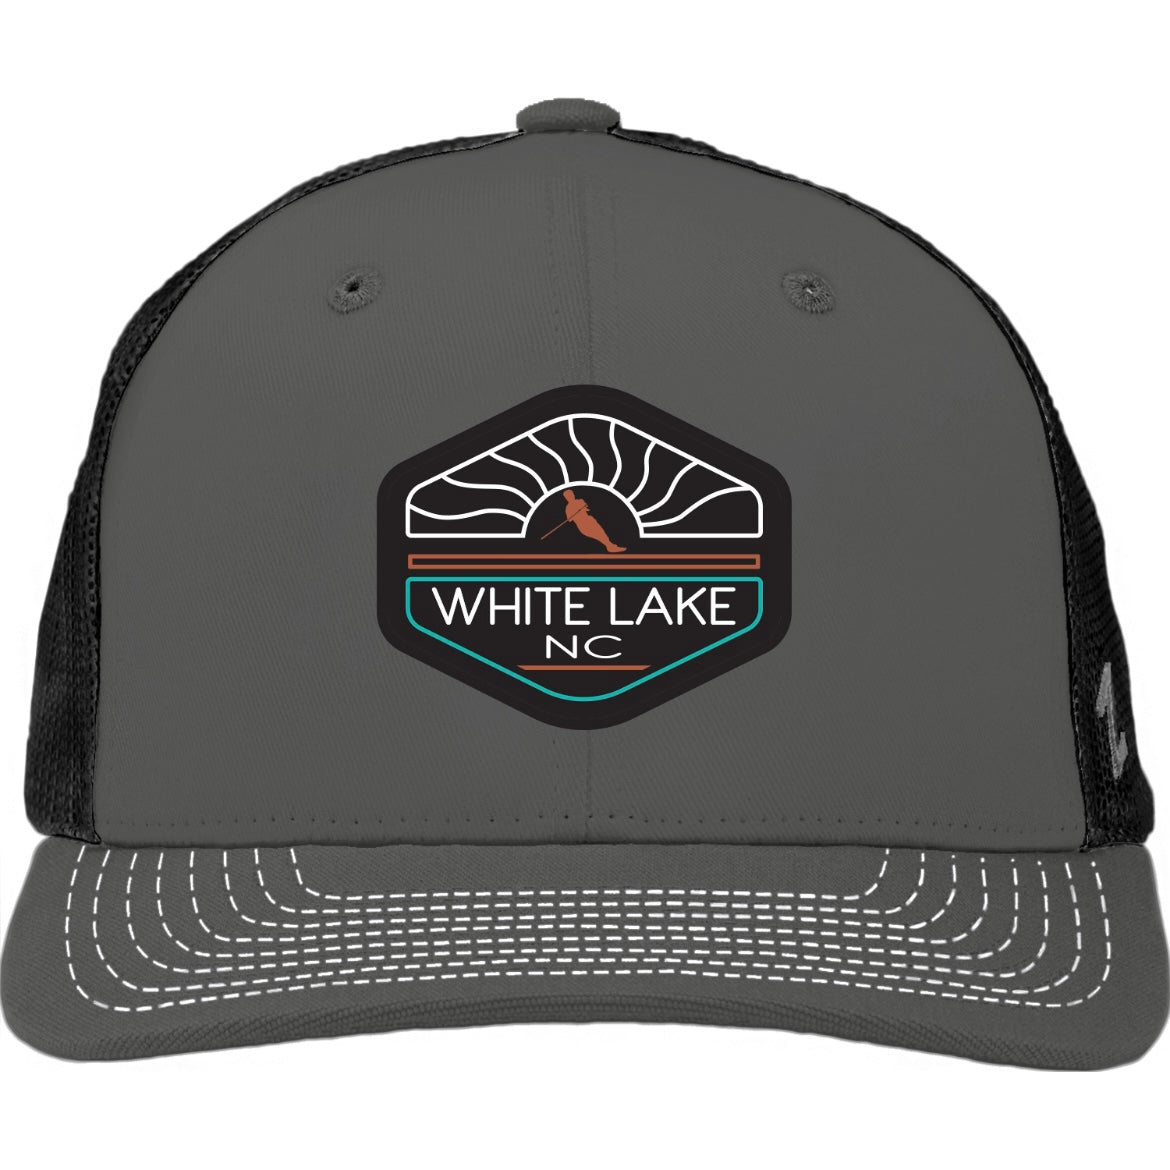 White Lake Hat - Hillhelm w/Skier